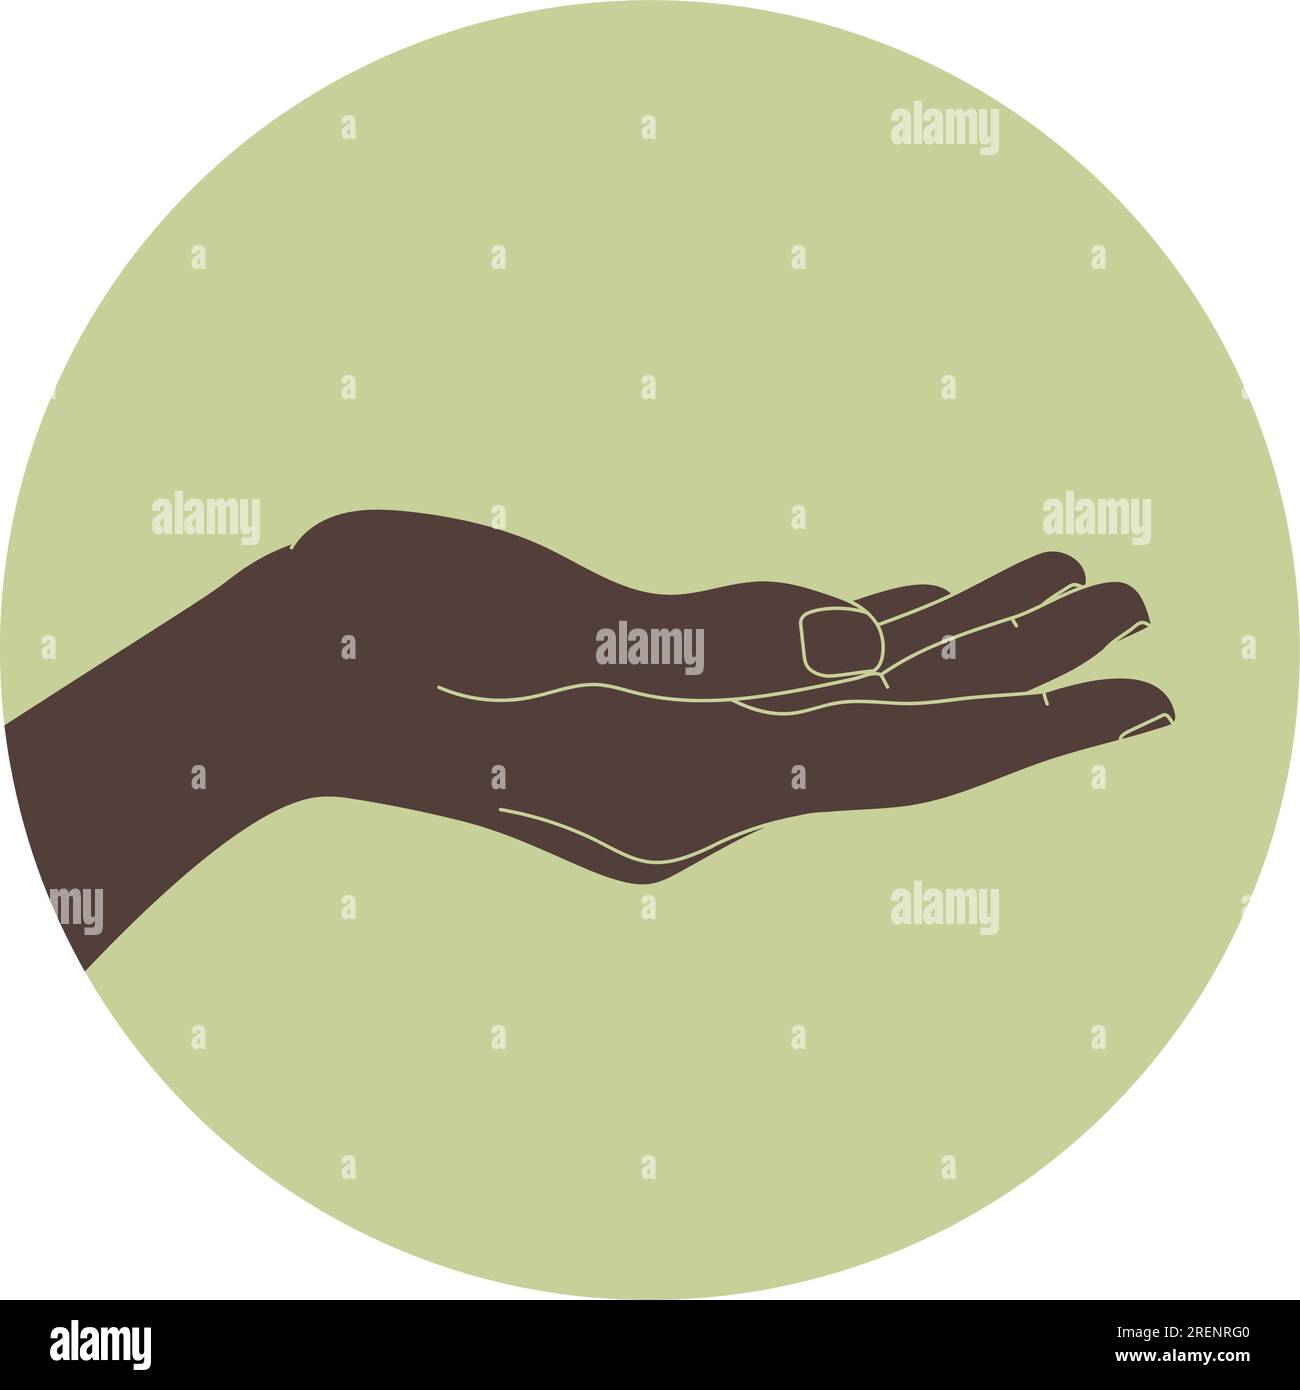 Hand mit Handfläche nach oben in einem grünen Kreis. Öffnen Sie die Handfläche, um eine Geste zu bekommen oder zu empfangen, halten, zeigen, präsentieren Sie das Konzept. Vector Illustrati Stock Vektor